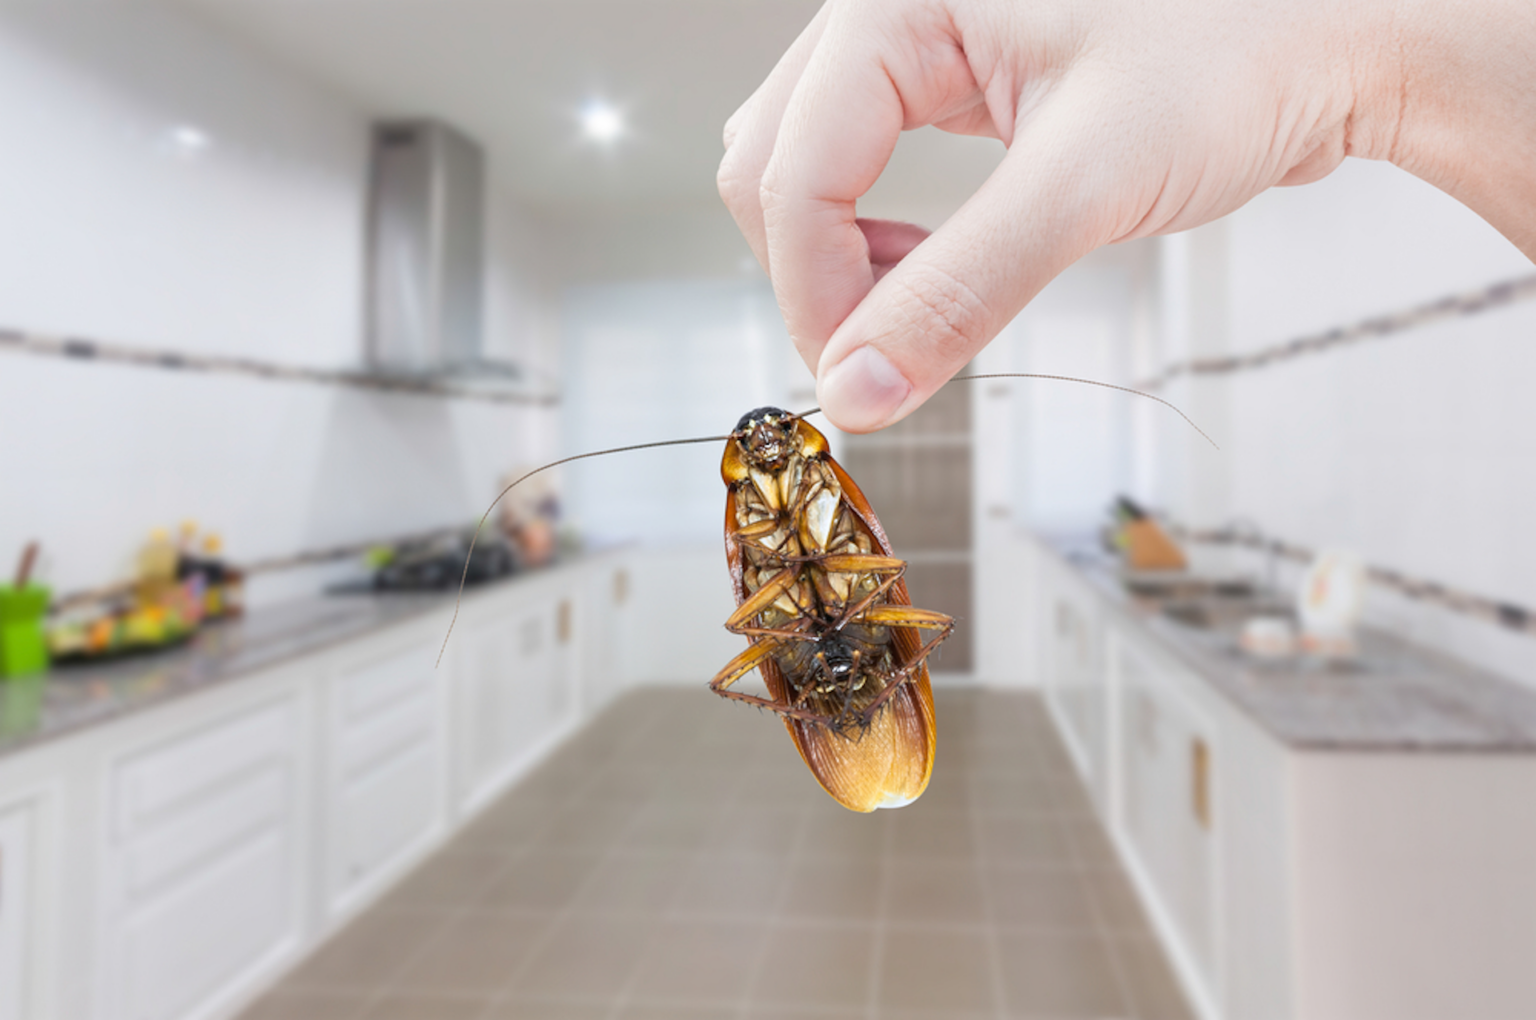 cockroach in kitchen sink